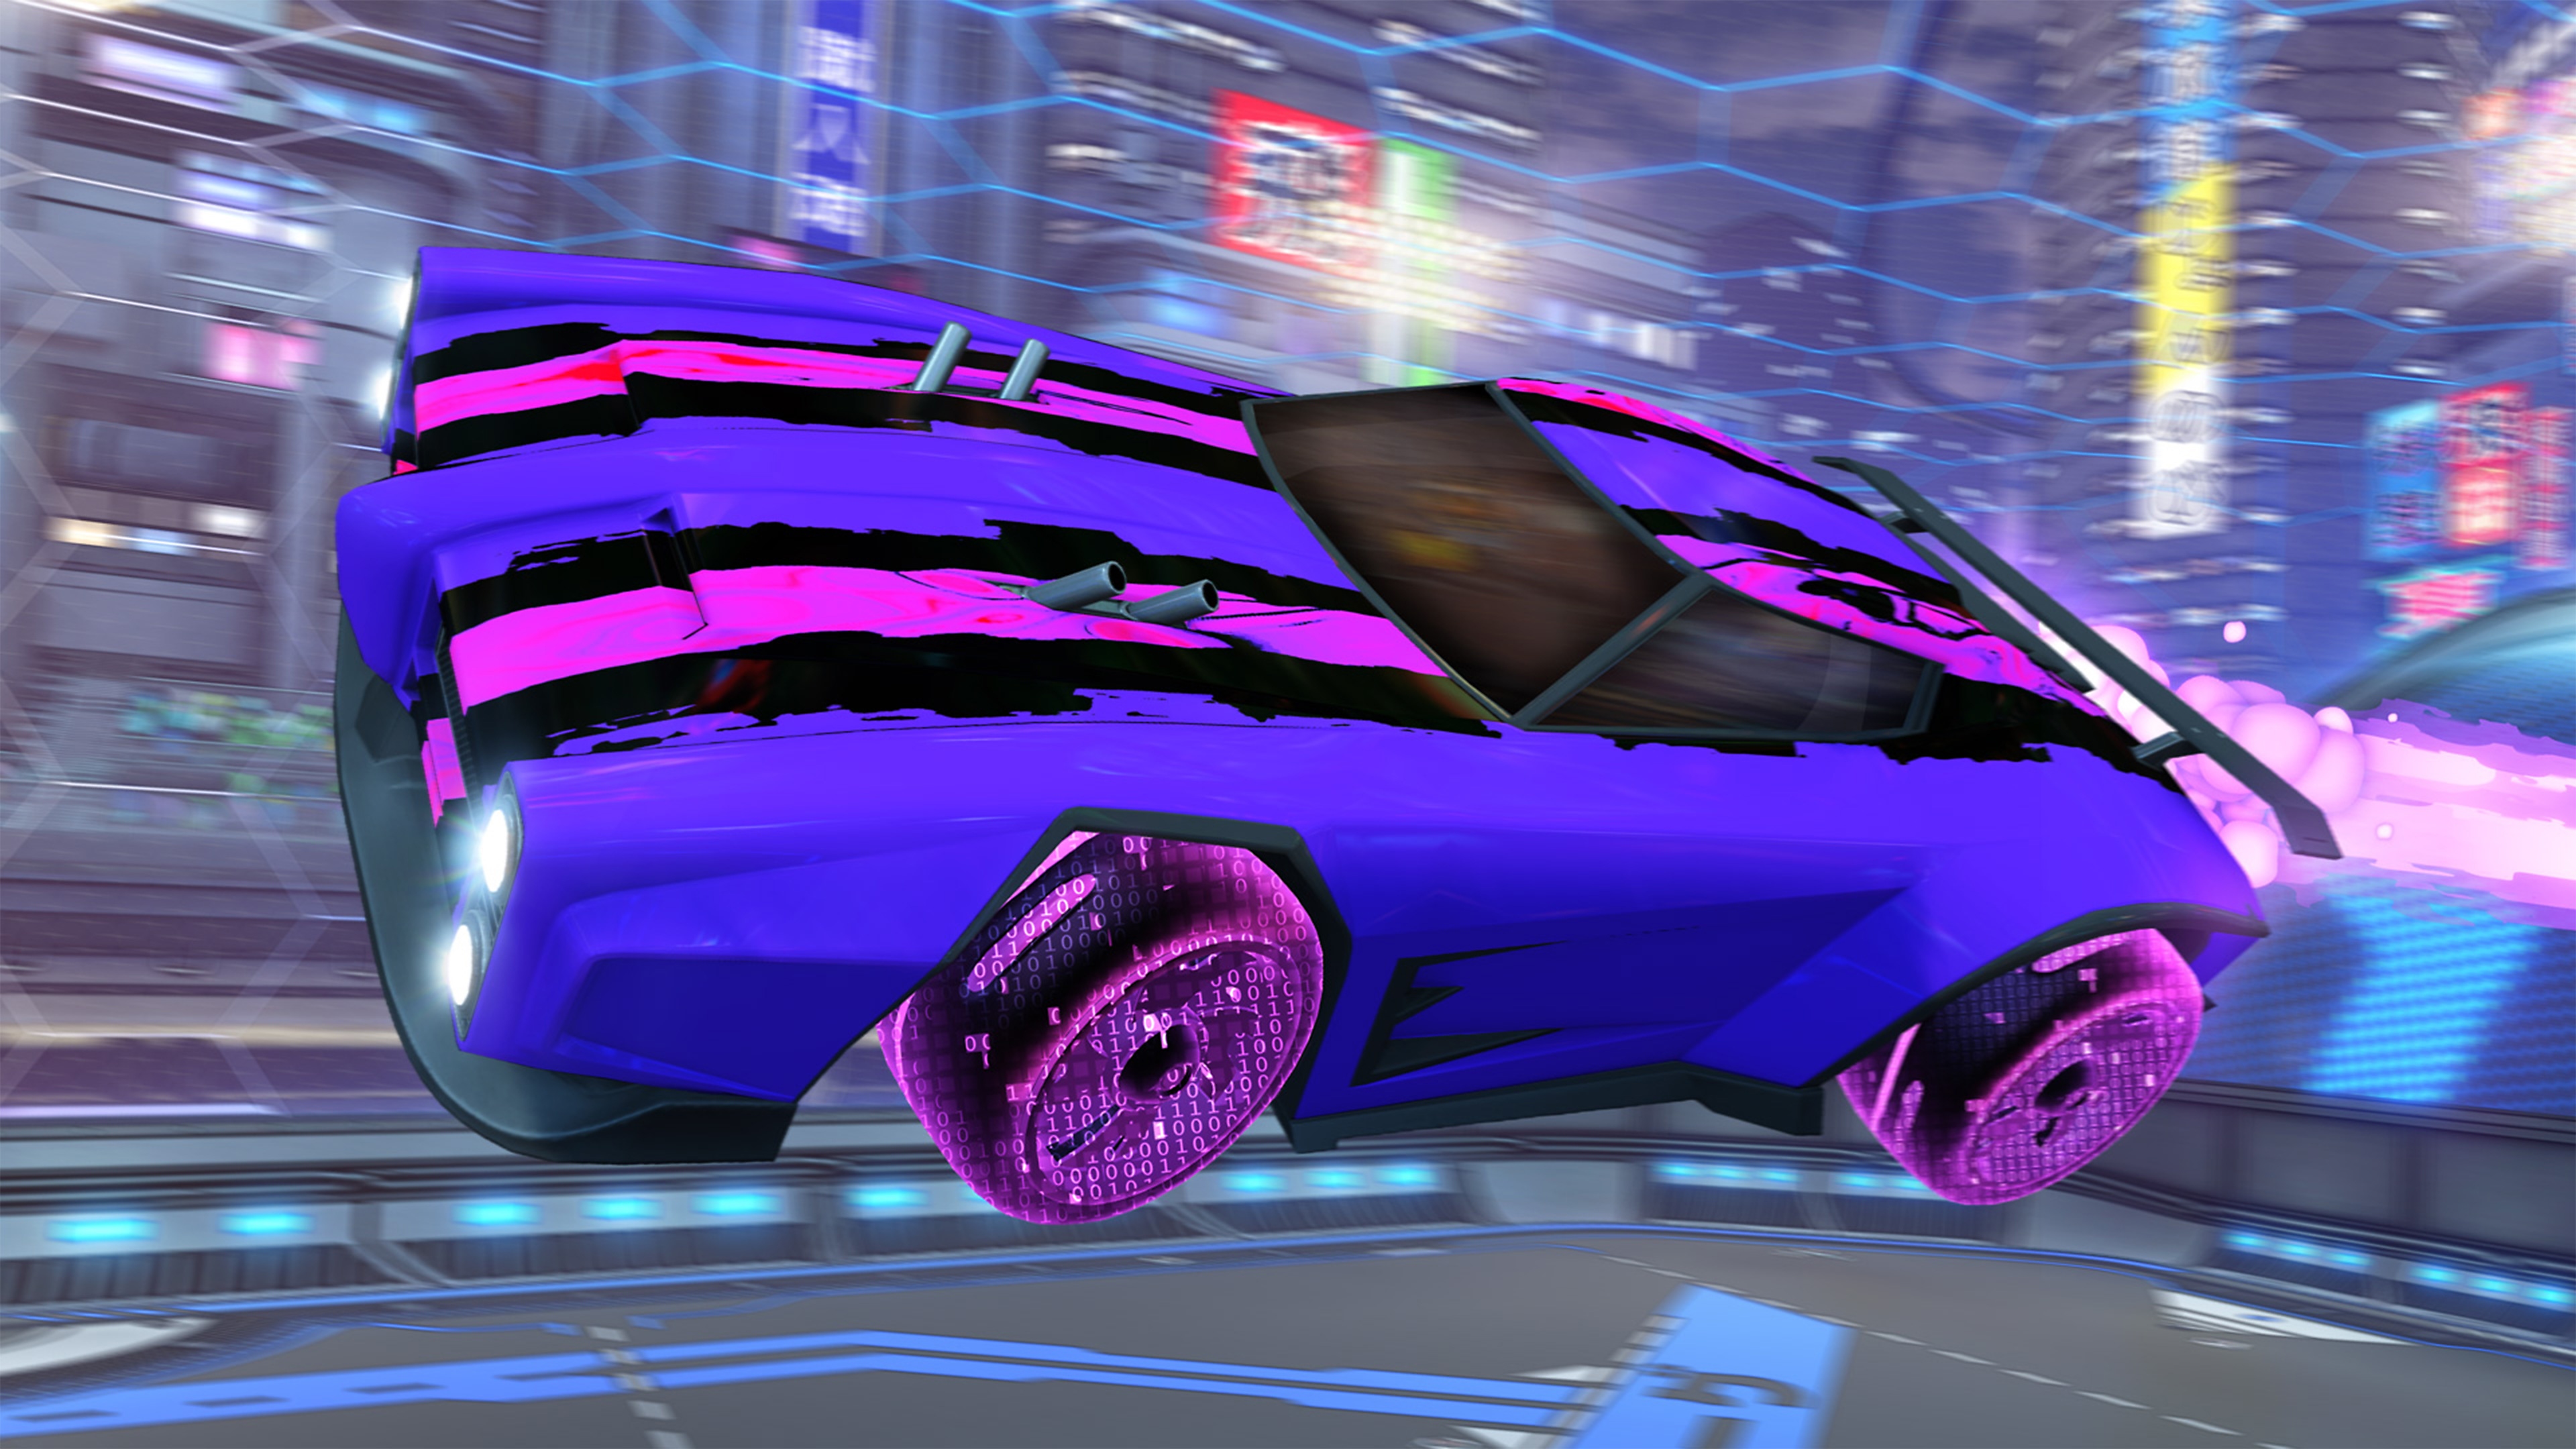 《火箭联盟》截屏展示粉黑条纹的紫色赛车